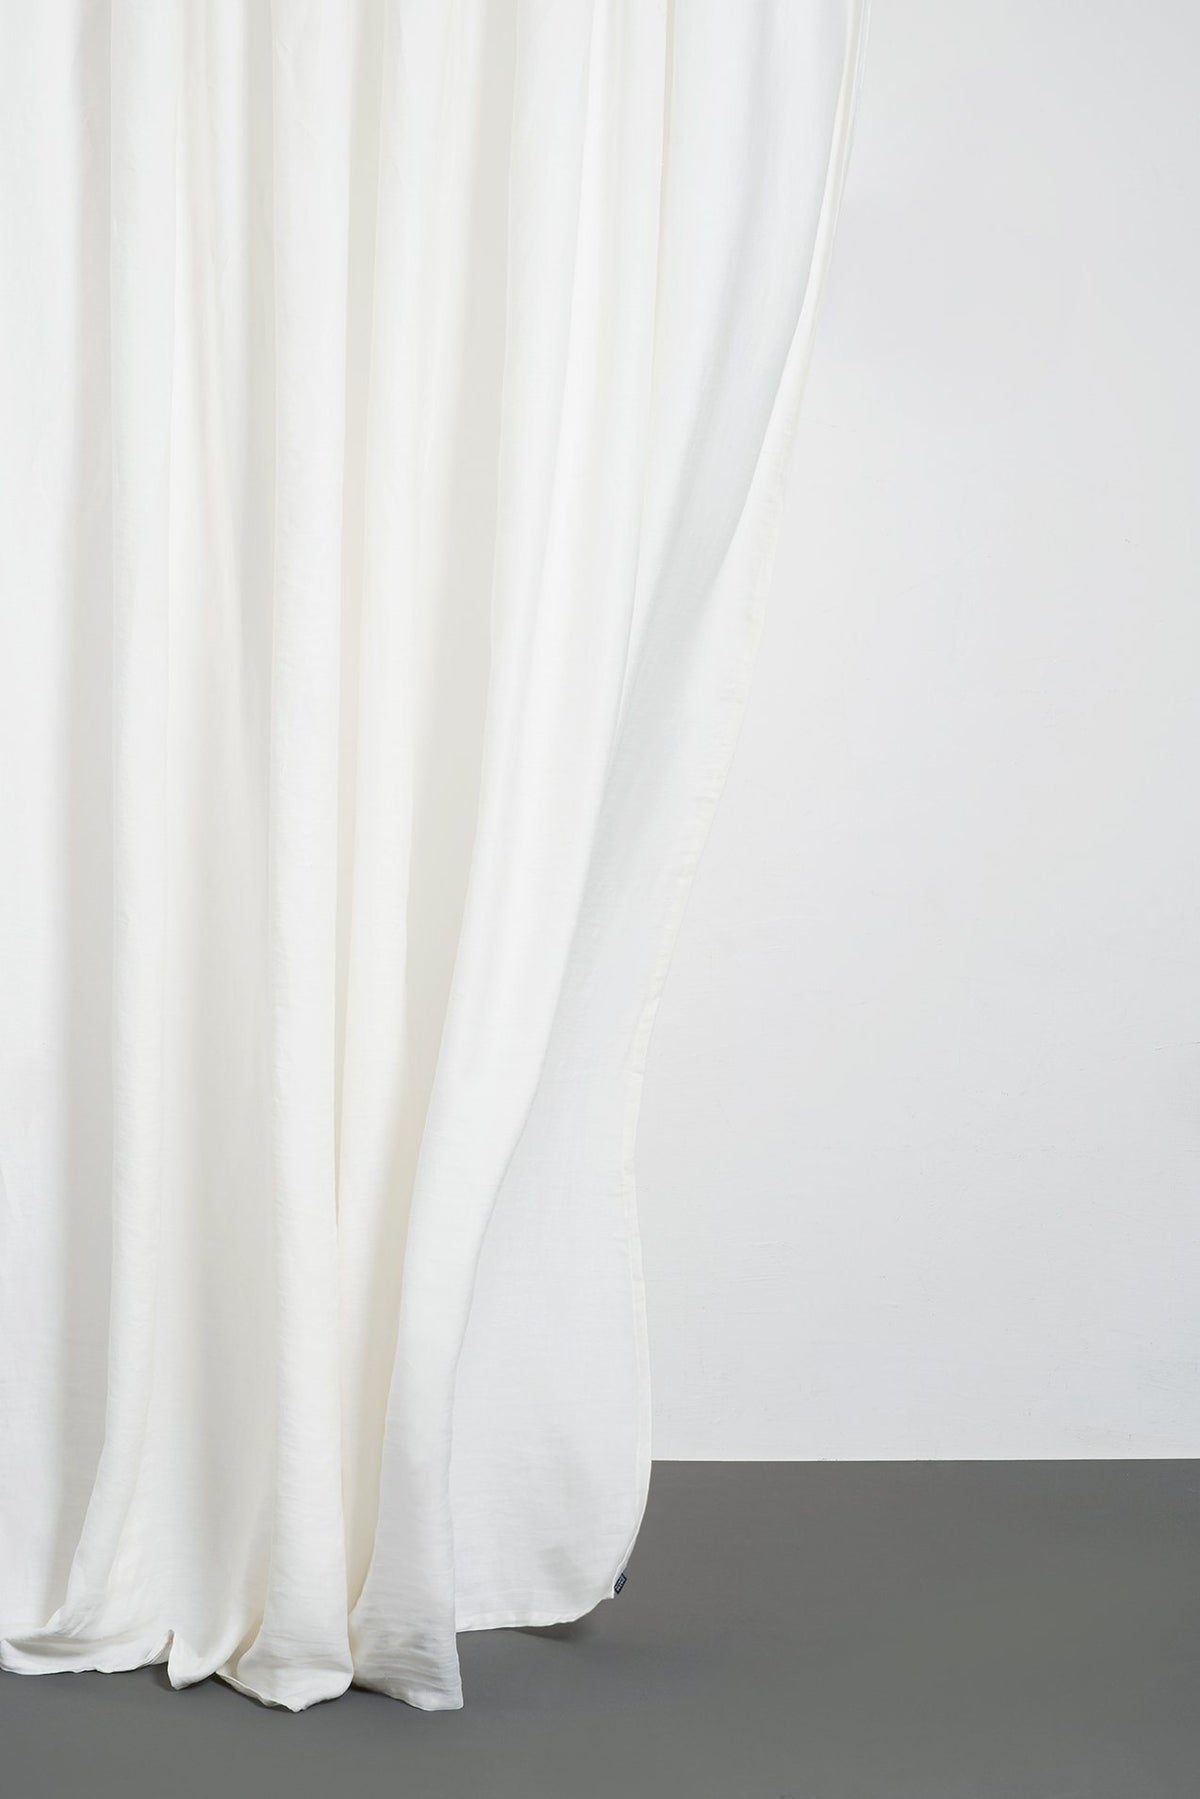 Two Tone Vorhang Stonewashed weiss in Weiss präsentiert im Onlineshop von KAQTU Design AG. Vorhang ist von ZigZagZurich